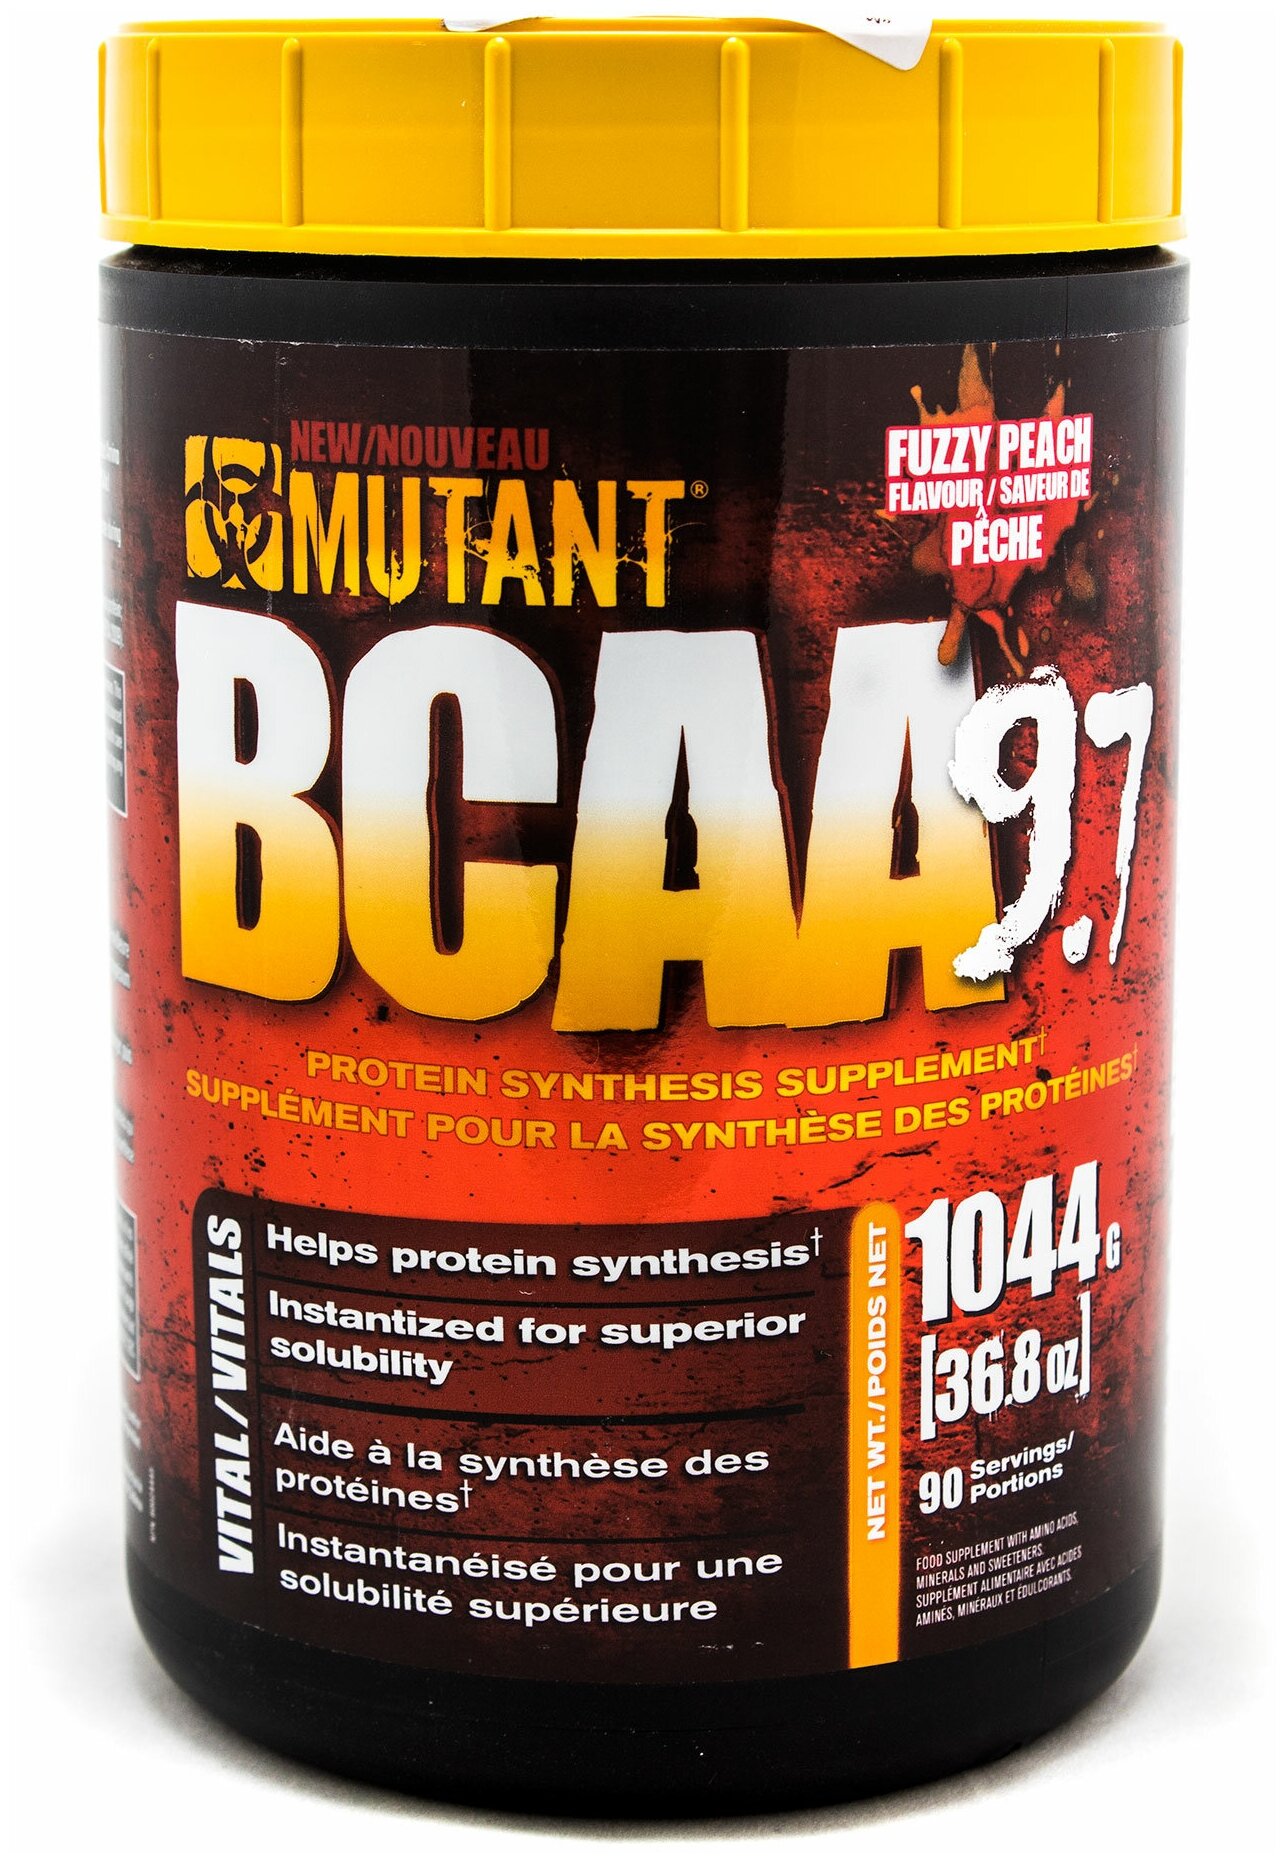 Аминокислоты и BCAA для спорсменов Mutant BCAA 9.7 Fuzzy Peach 36,8 oz